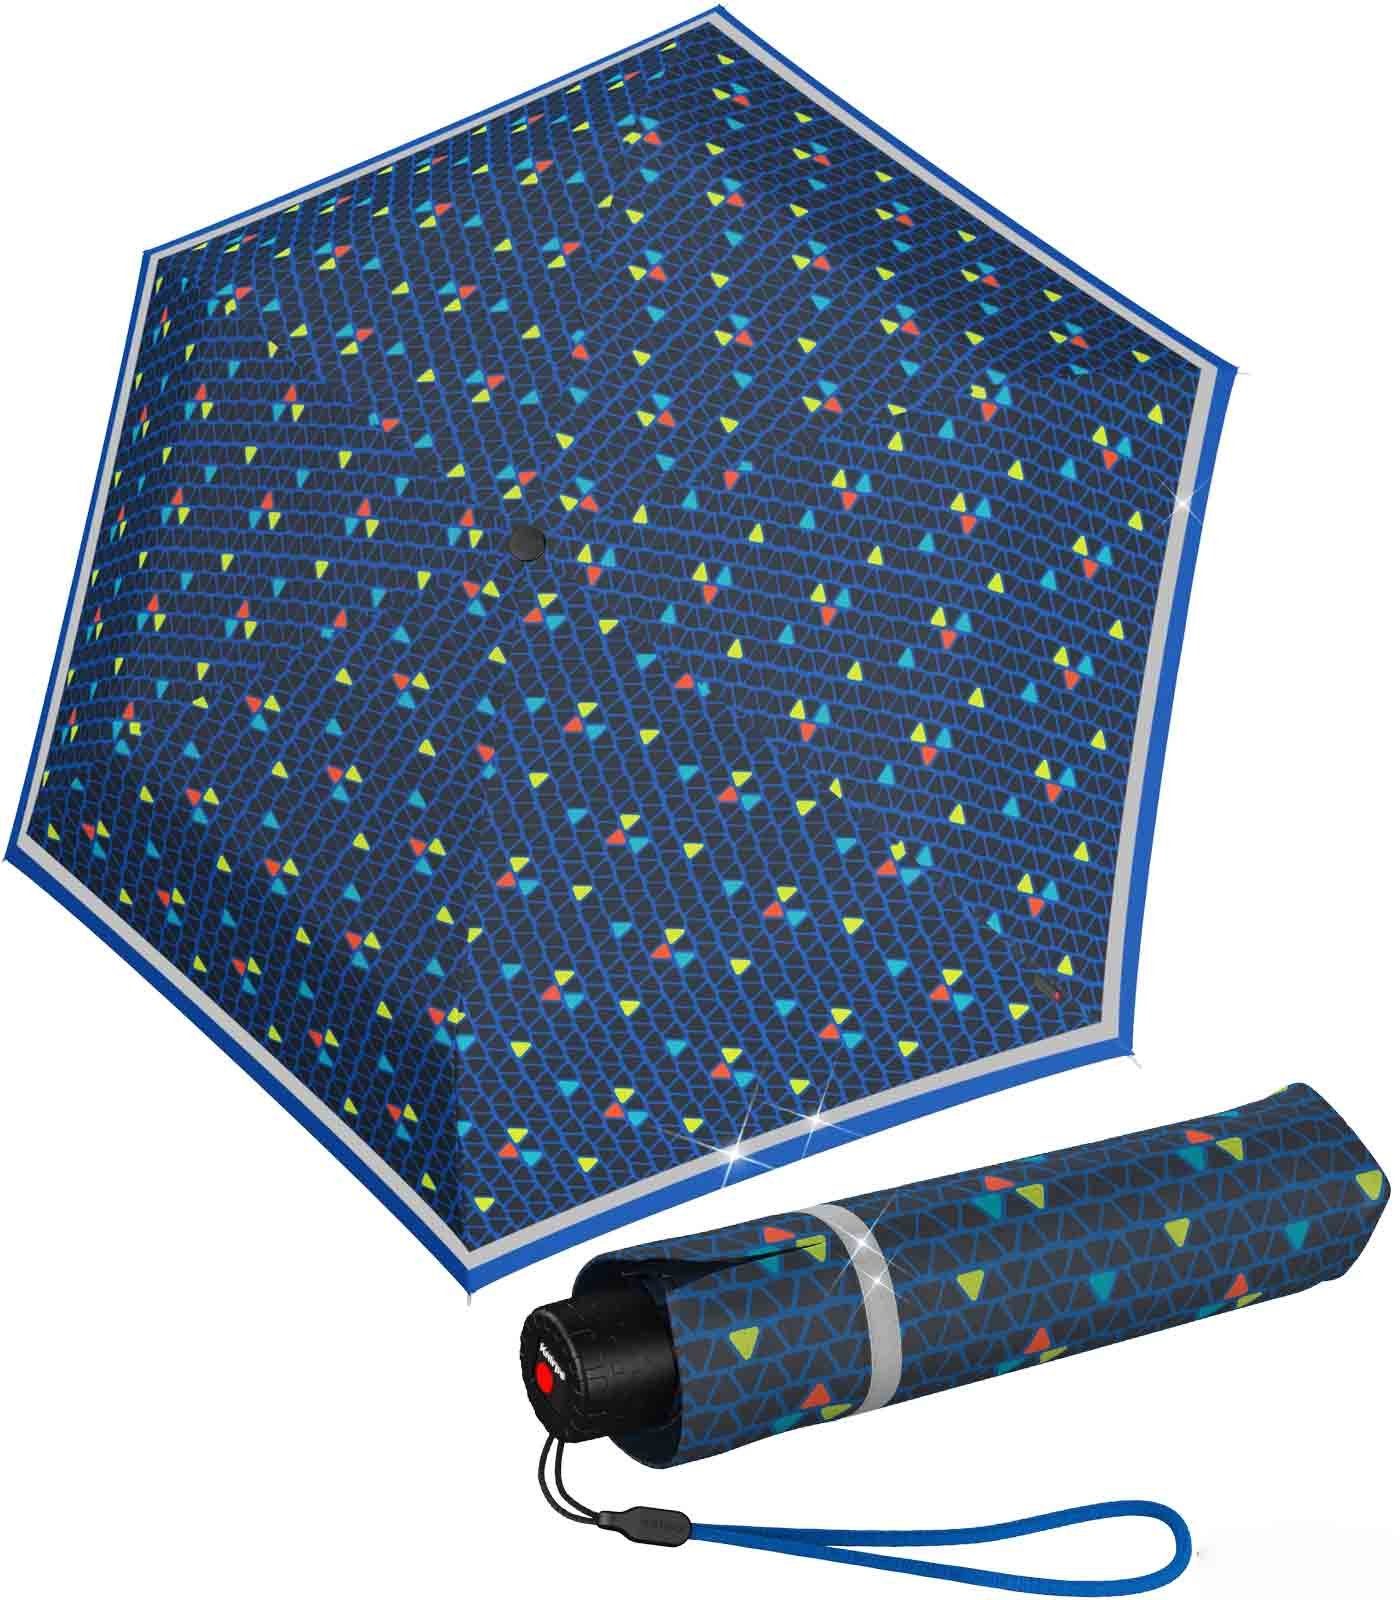 Knirps® Taschenregenschirm Kinderschirm Rookie reflective mit Reflexborte, sehr leicht, besonders auffallend durch den reflektierenden Streifen, perfekt für den Schulweg triple blue